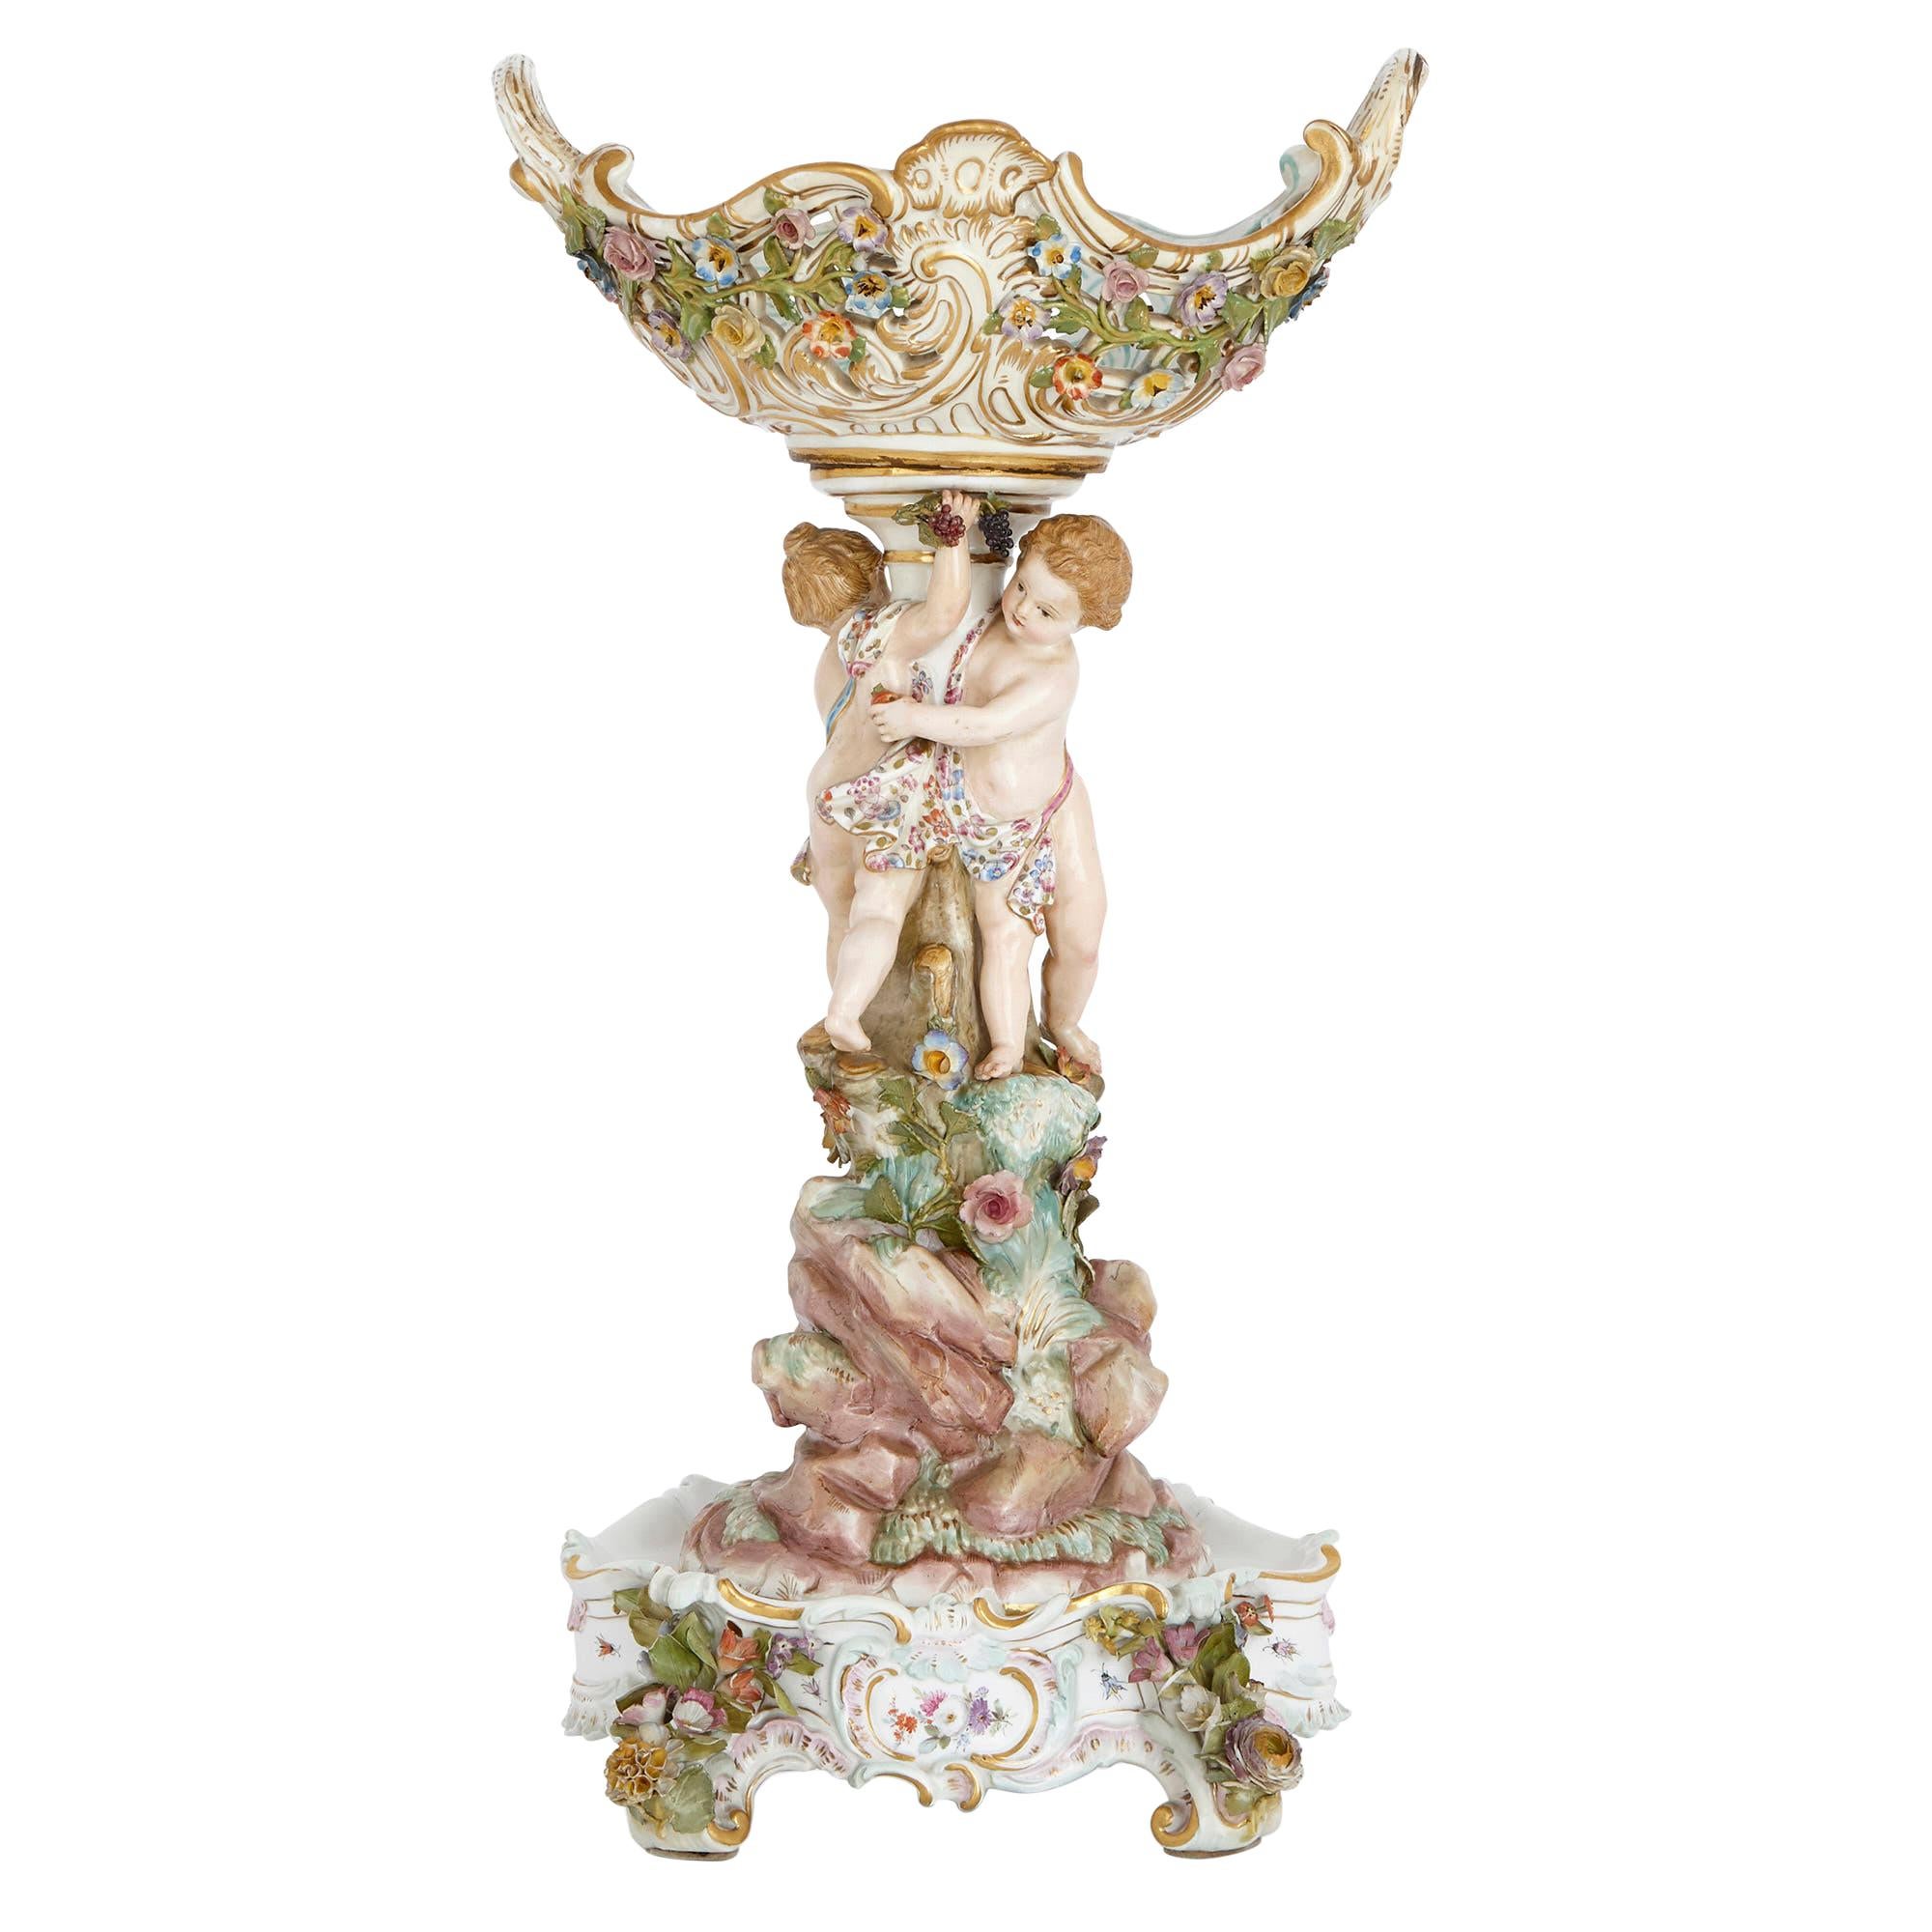 Antique Porcelain Centrepiece with Cherubs, by Meissen